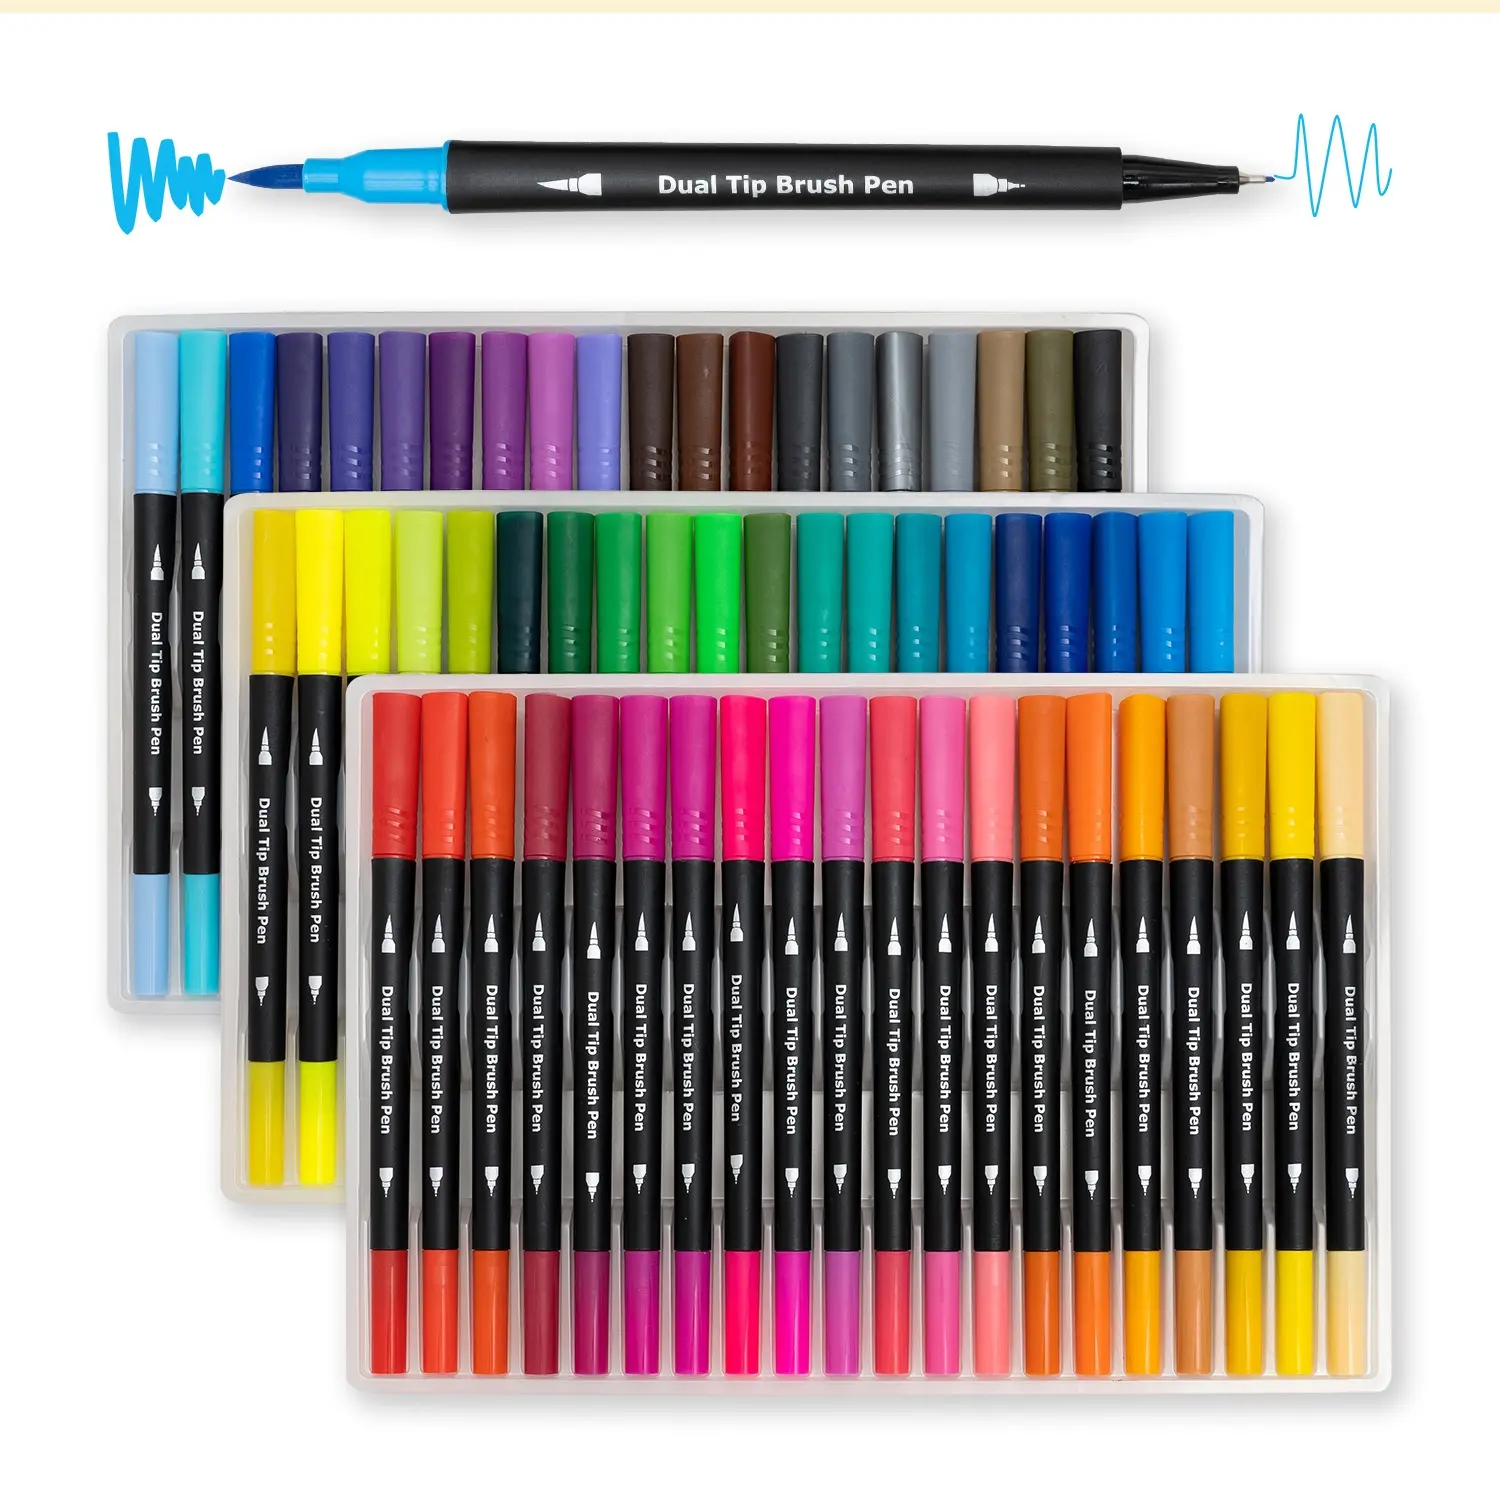 24 renk çift fırça kalem seti suluboya sanat belirteçleri İki taraflı Tips parlak ve canlı renk fırça kalem